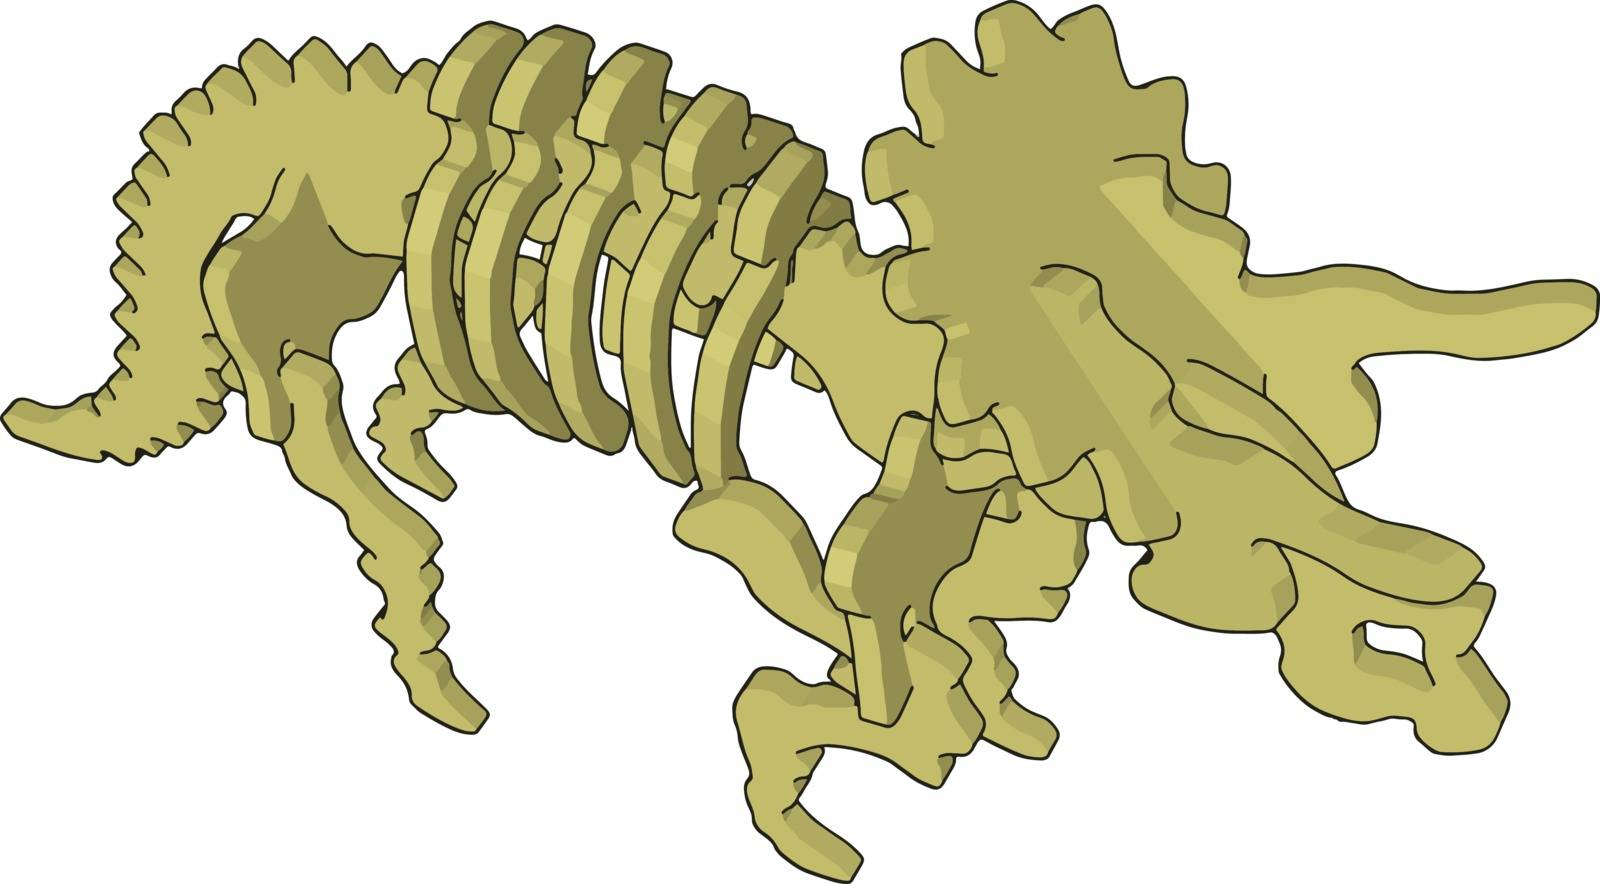 3d dinosaurus skelet, illustration, vector on white background.